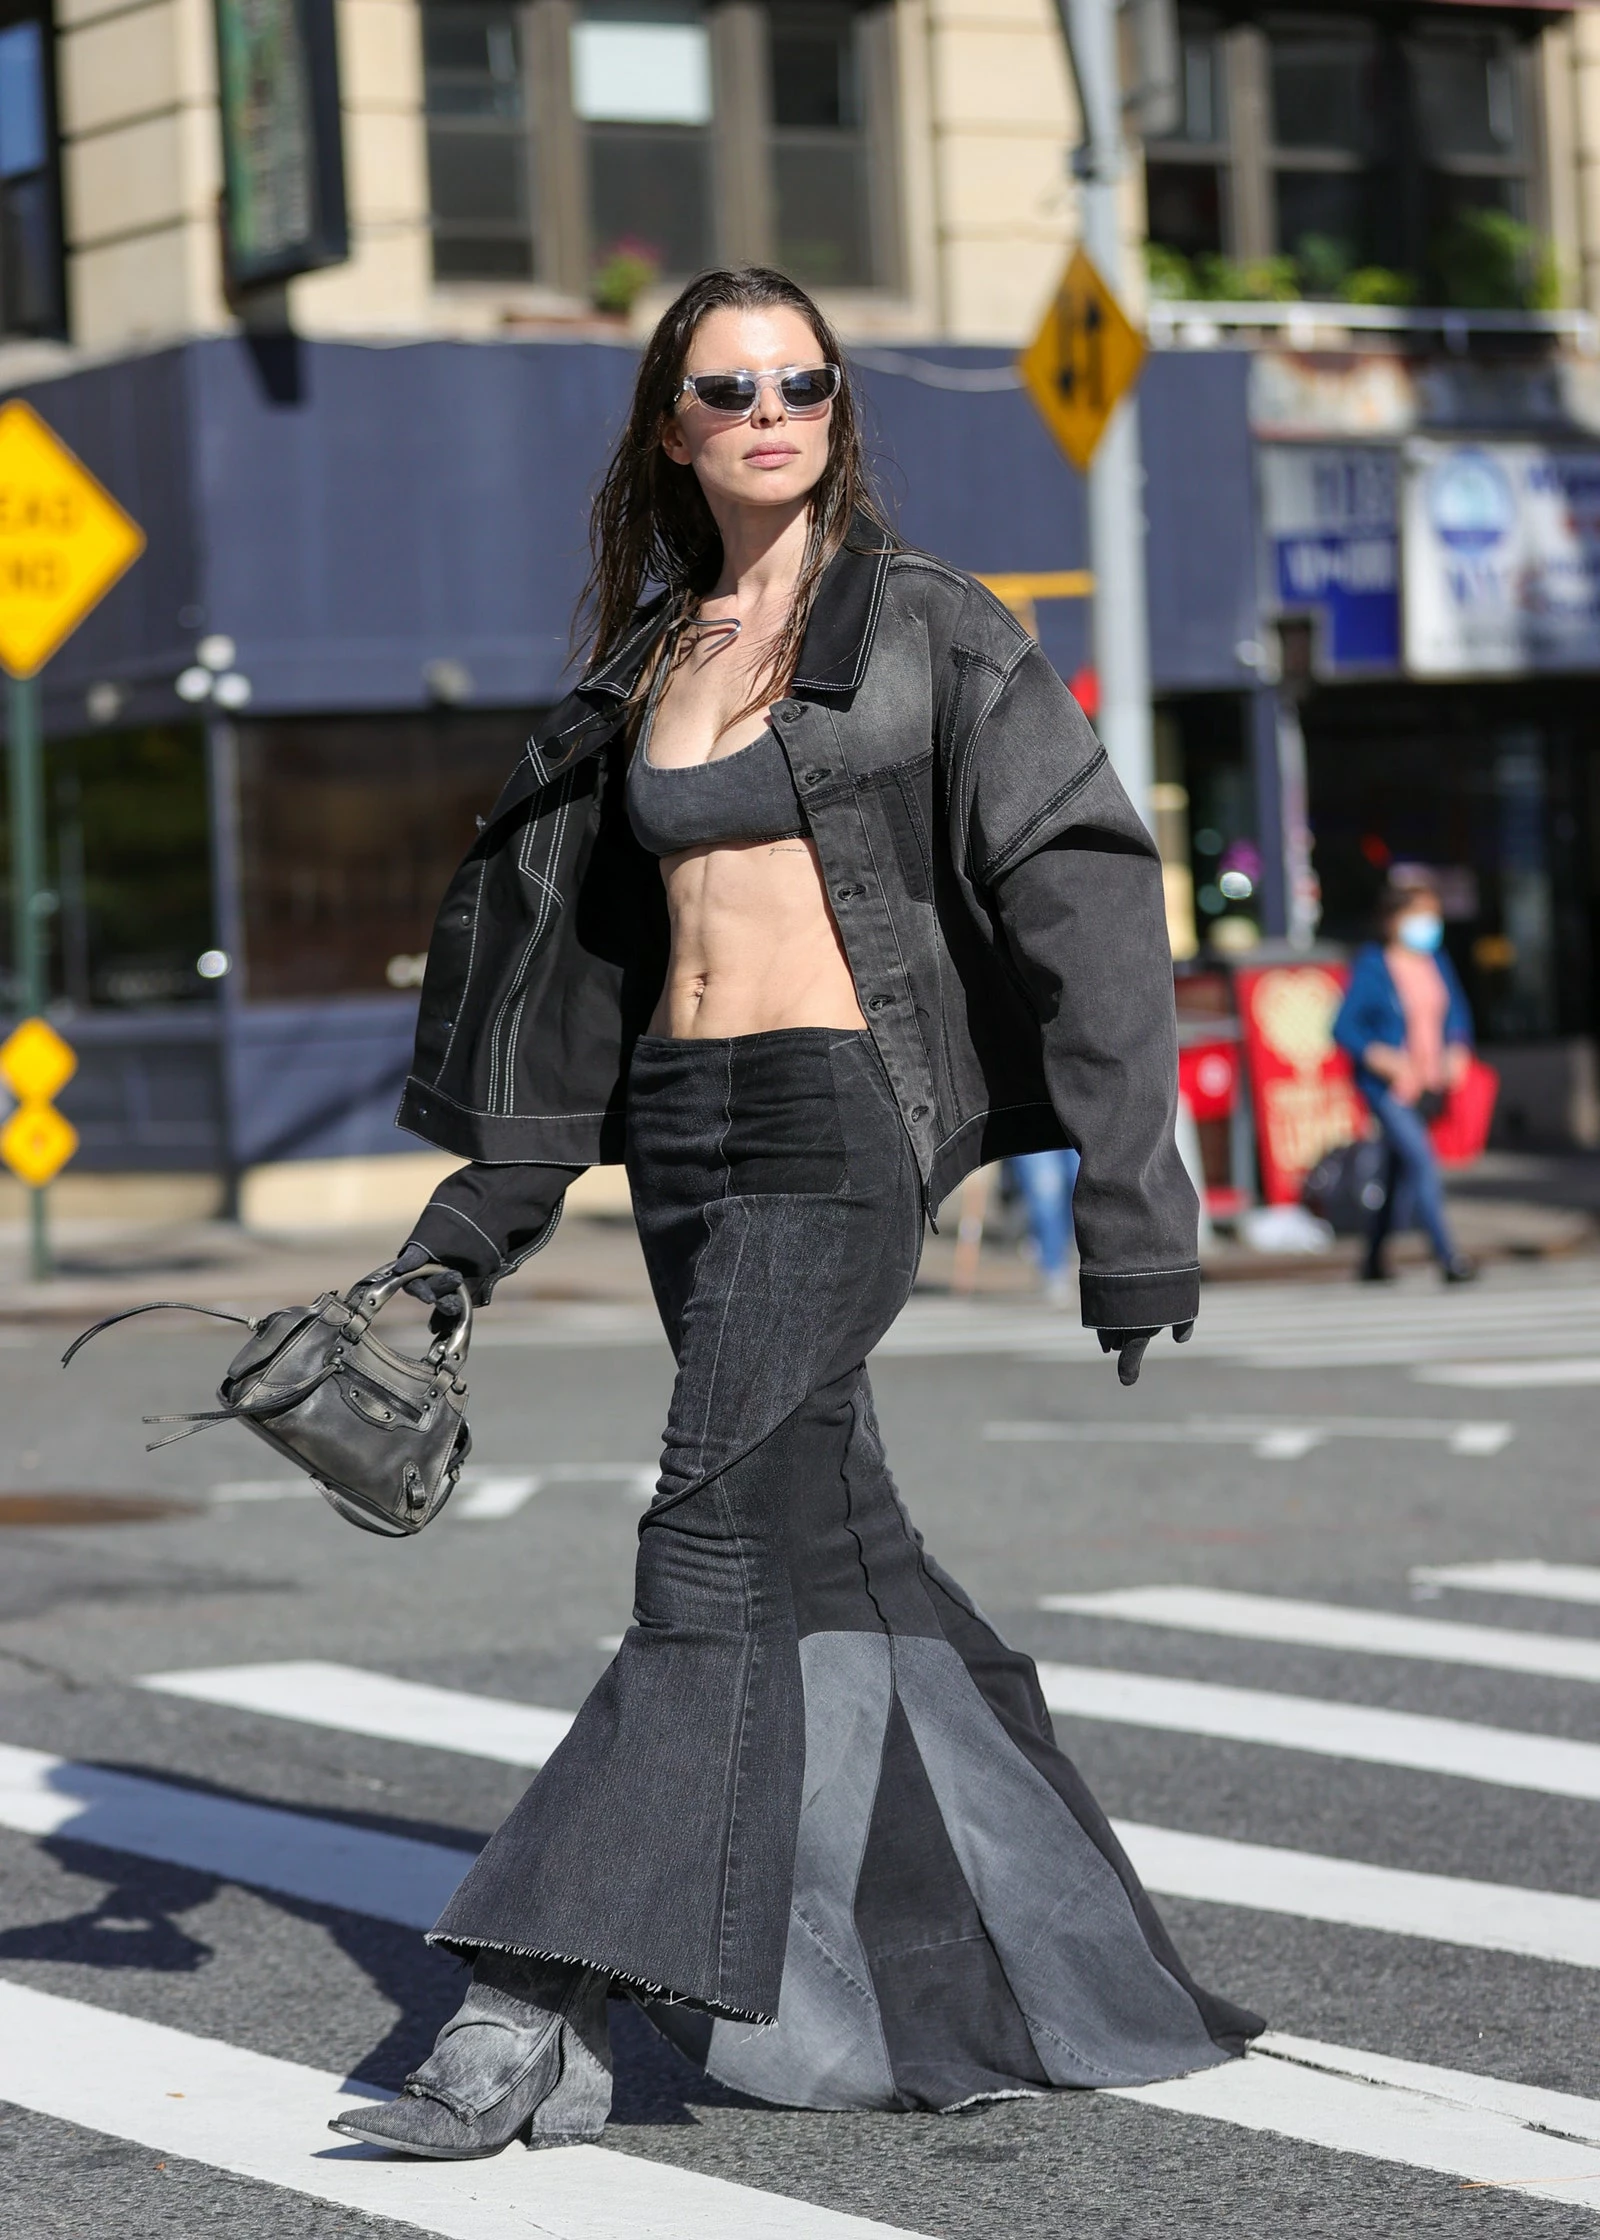 Джулія Фокс в чорному total look: джинсовому бомбері та джинсовій спідниці в стилі 